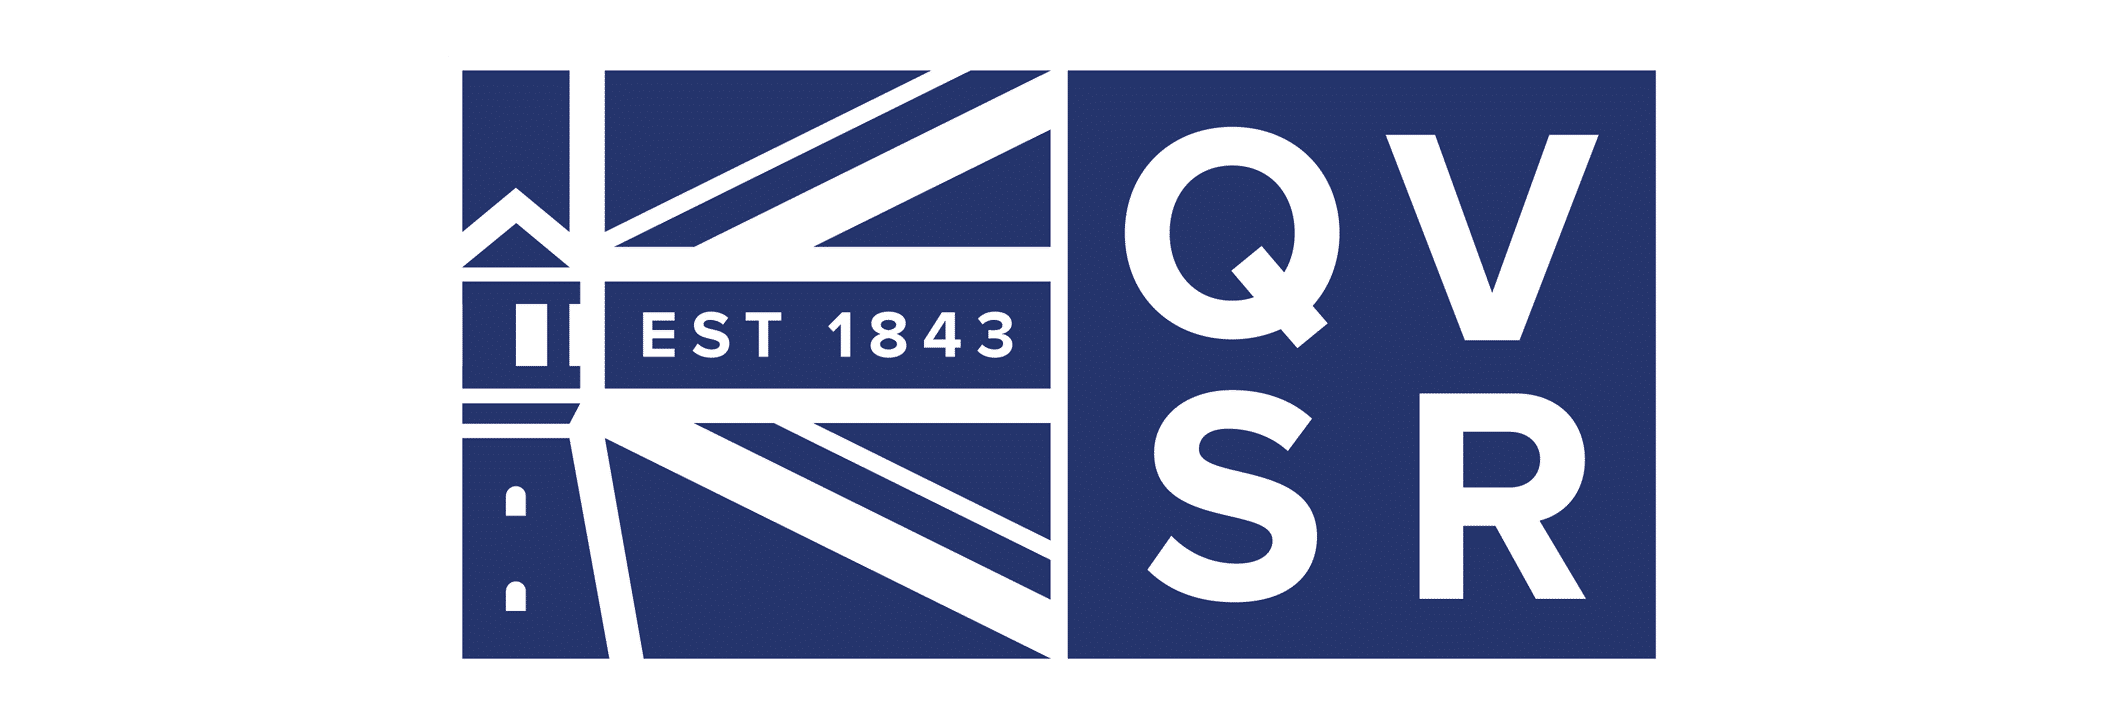 qvsr logo design by Toast